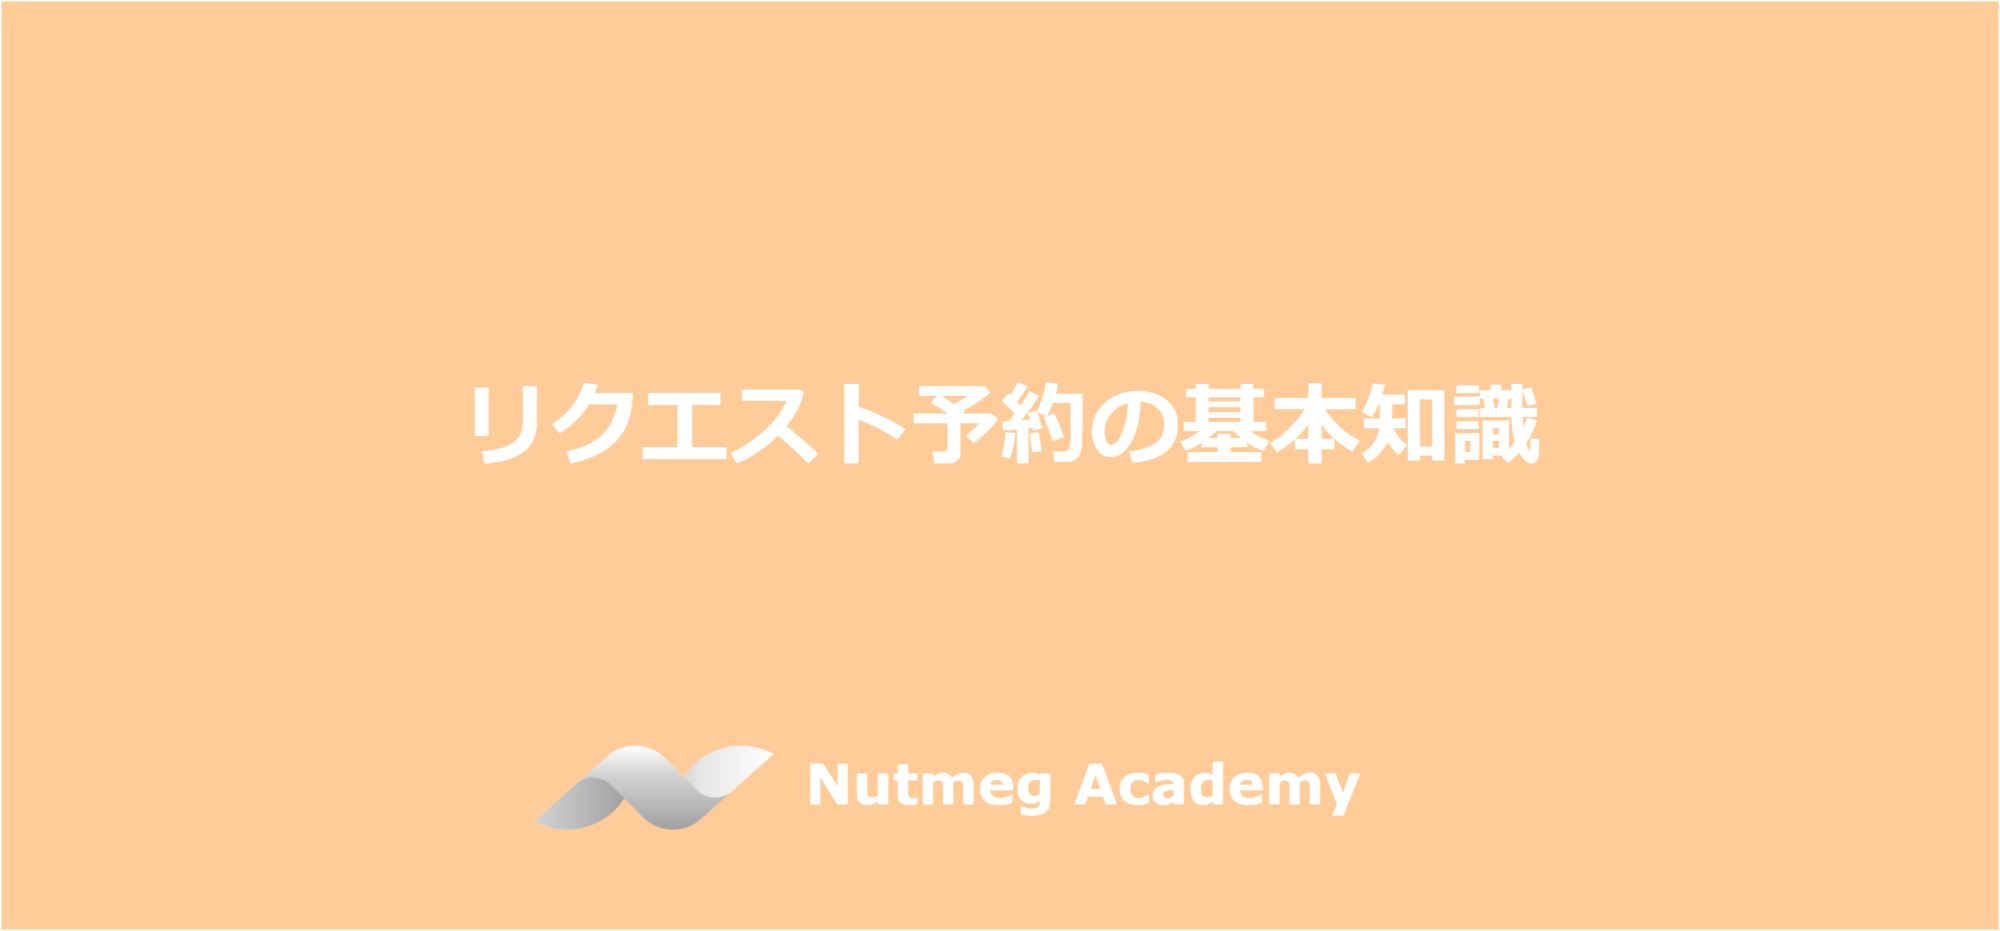 リクエスト予約の基本知識 – Nutmeg Academy